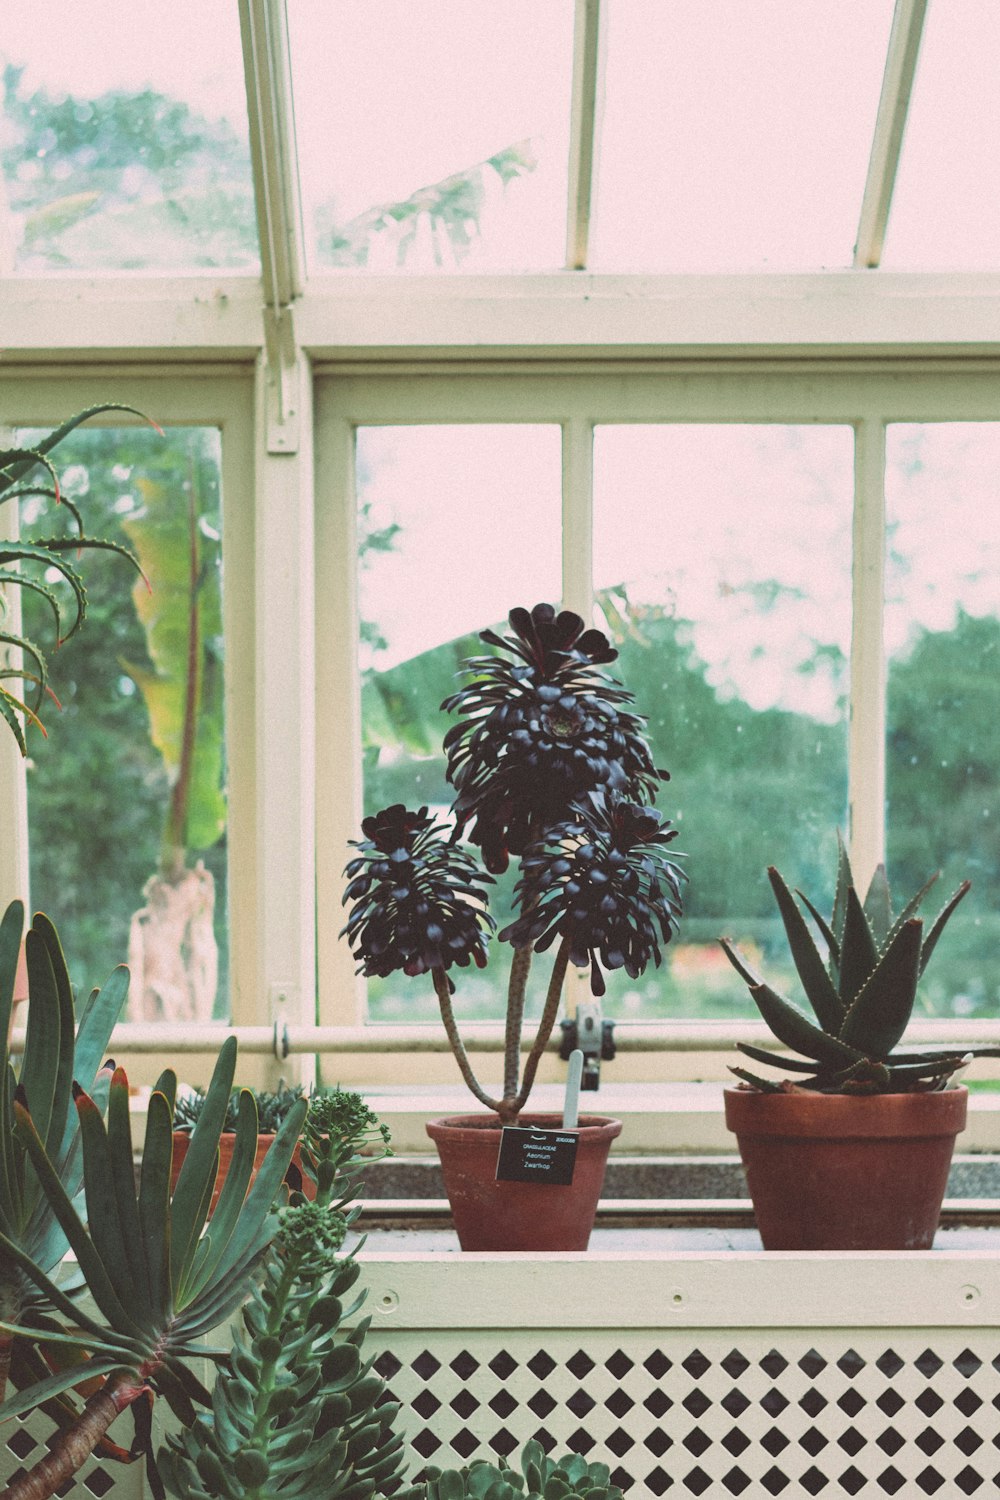 pots of plants beside windows